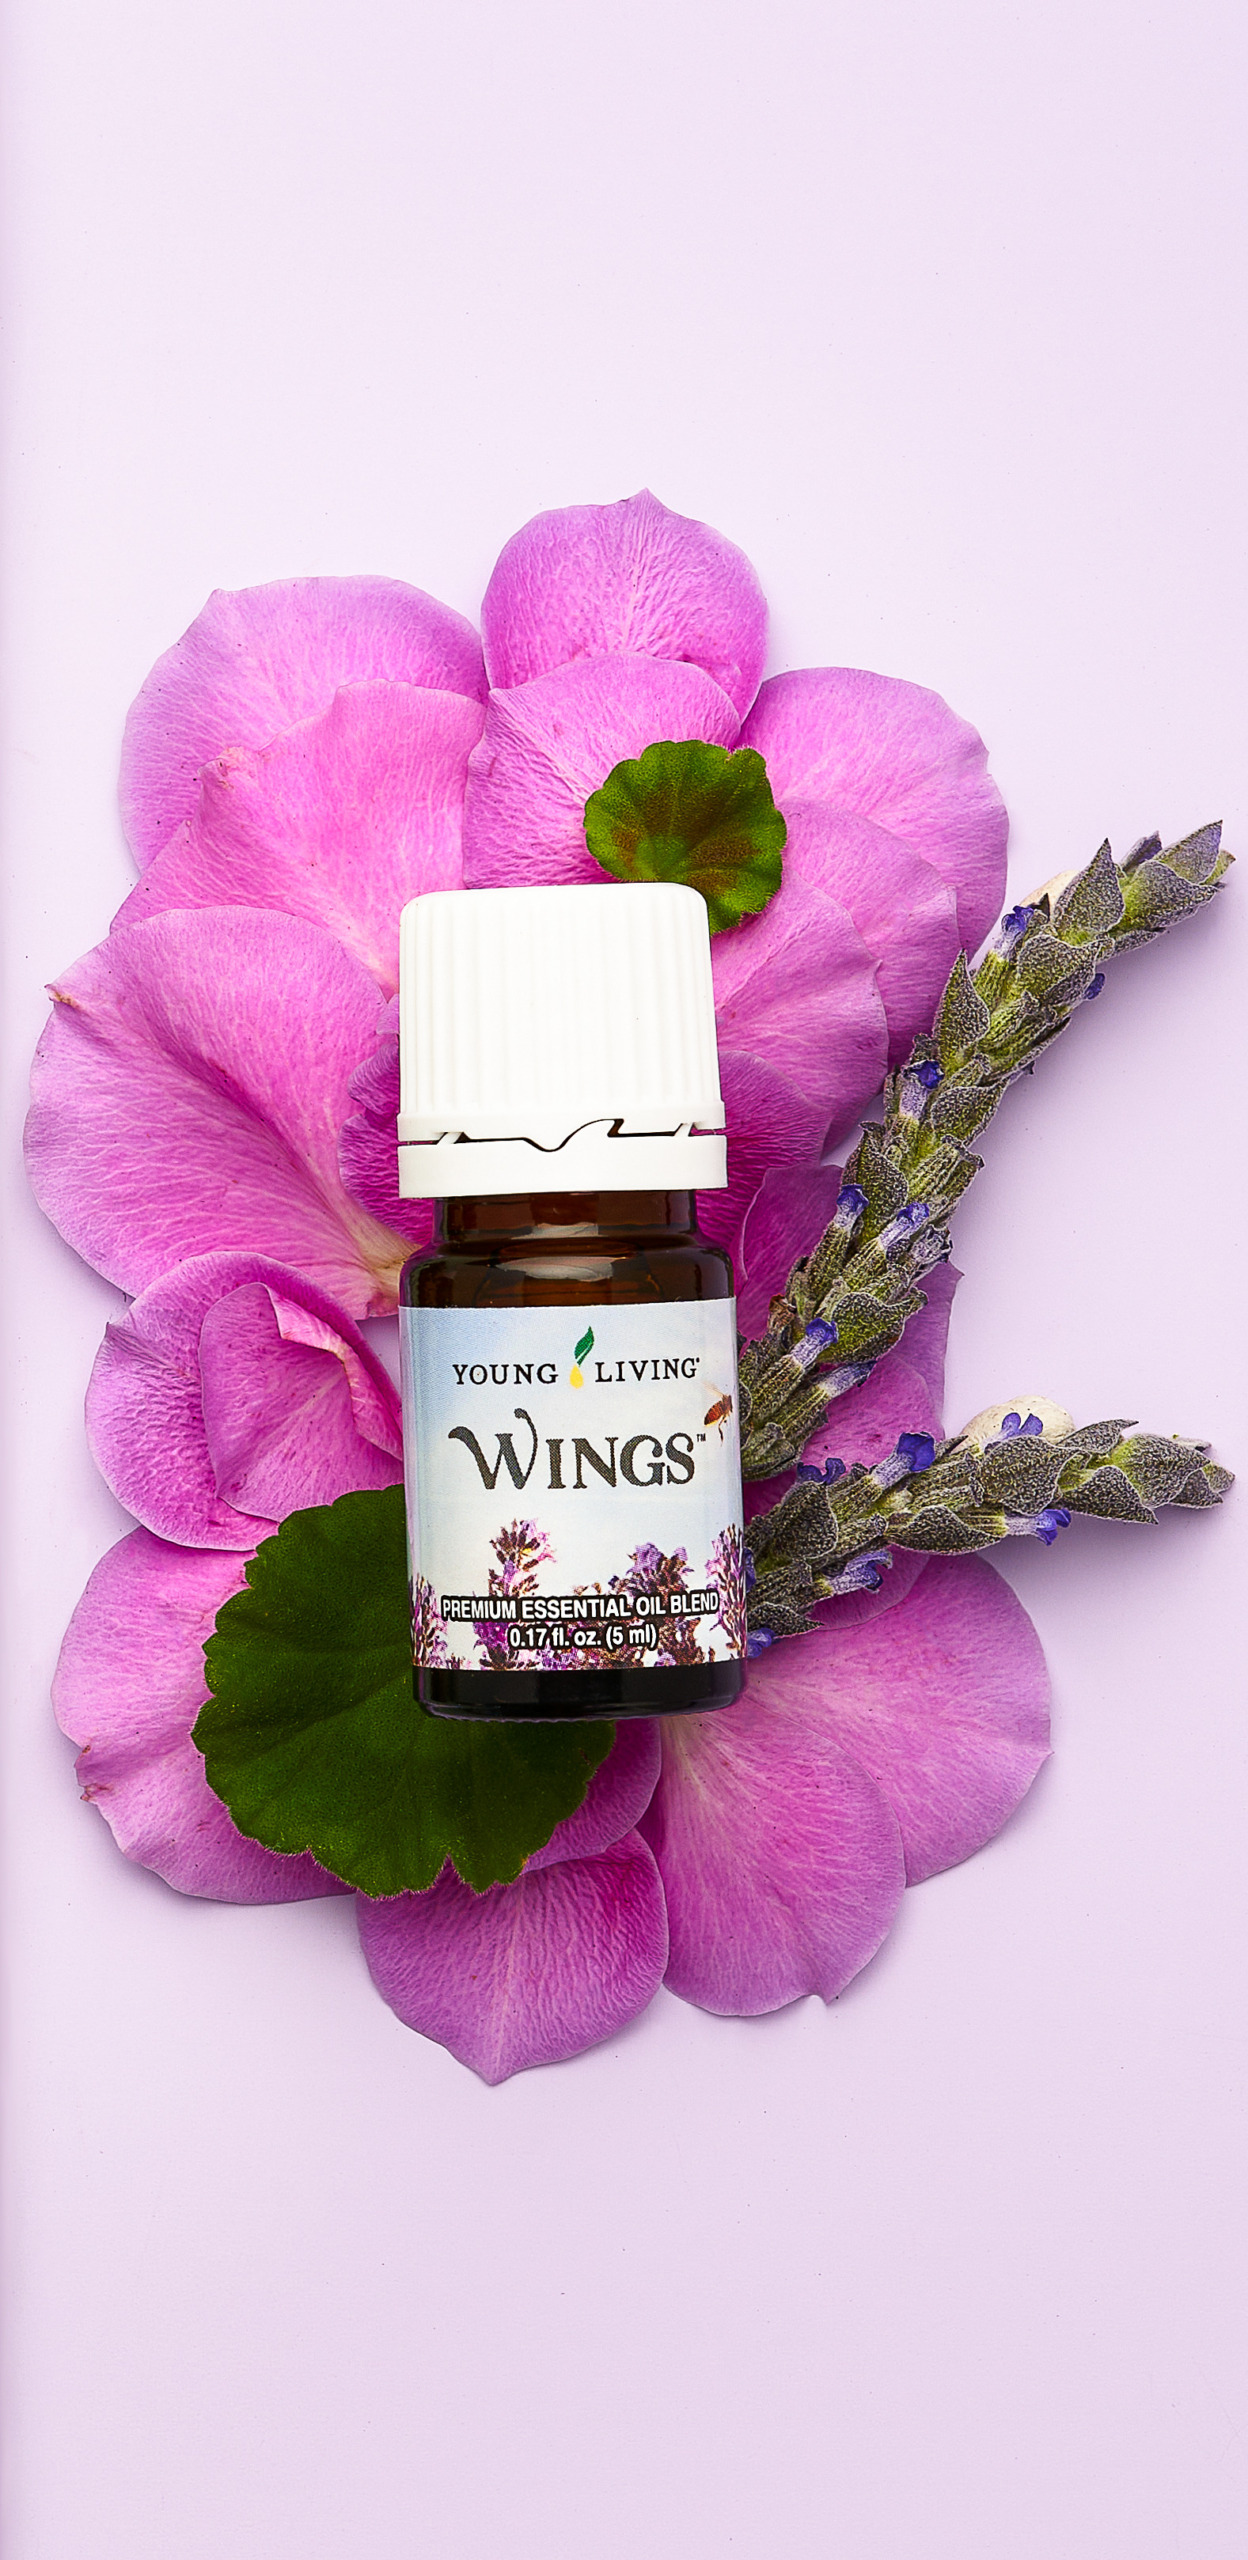 Wings essential oil blend